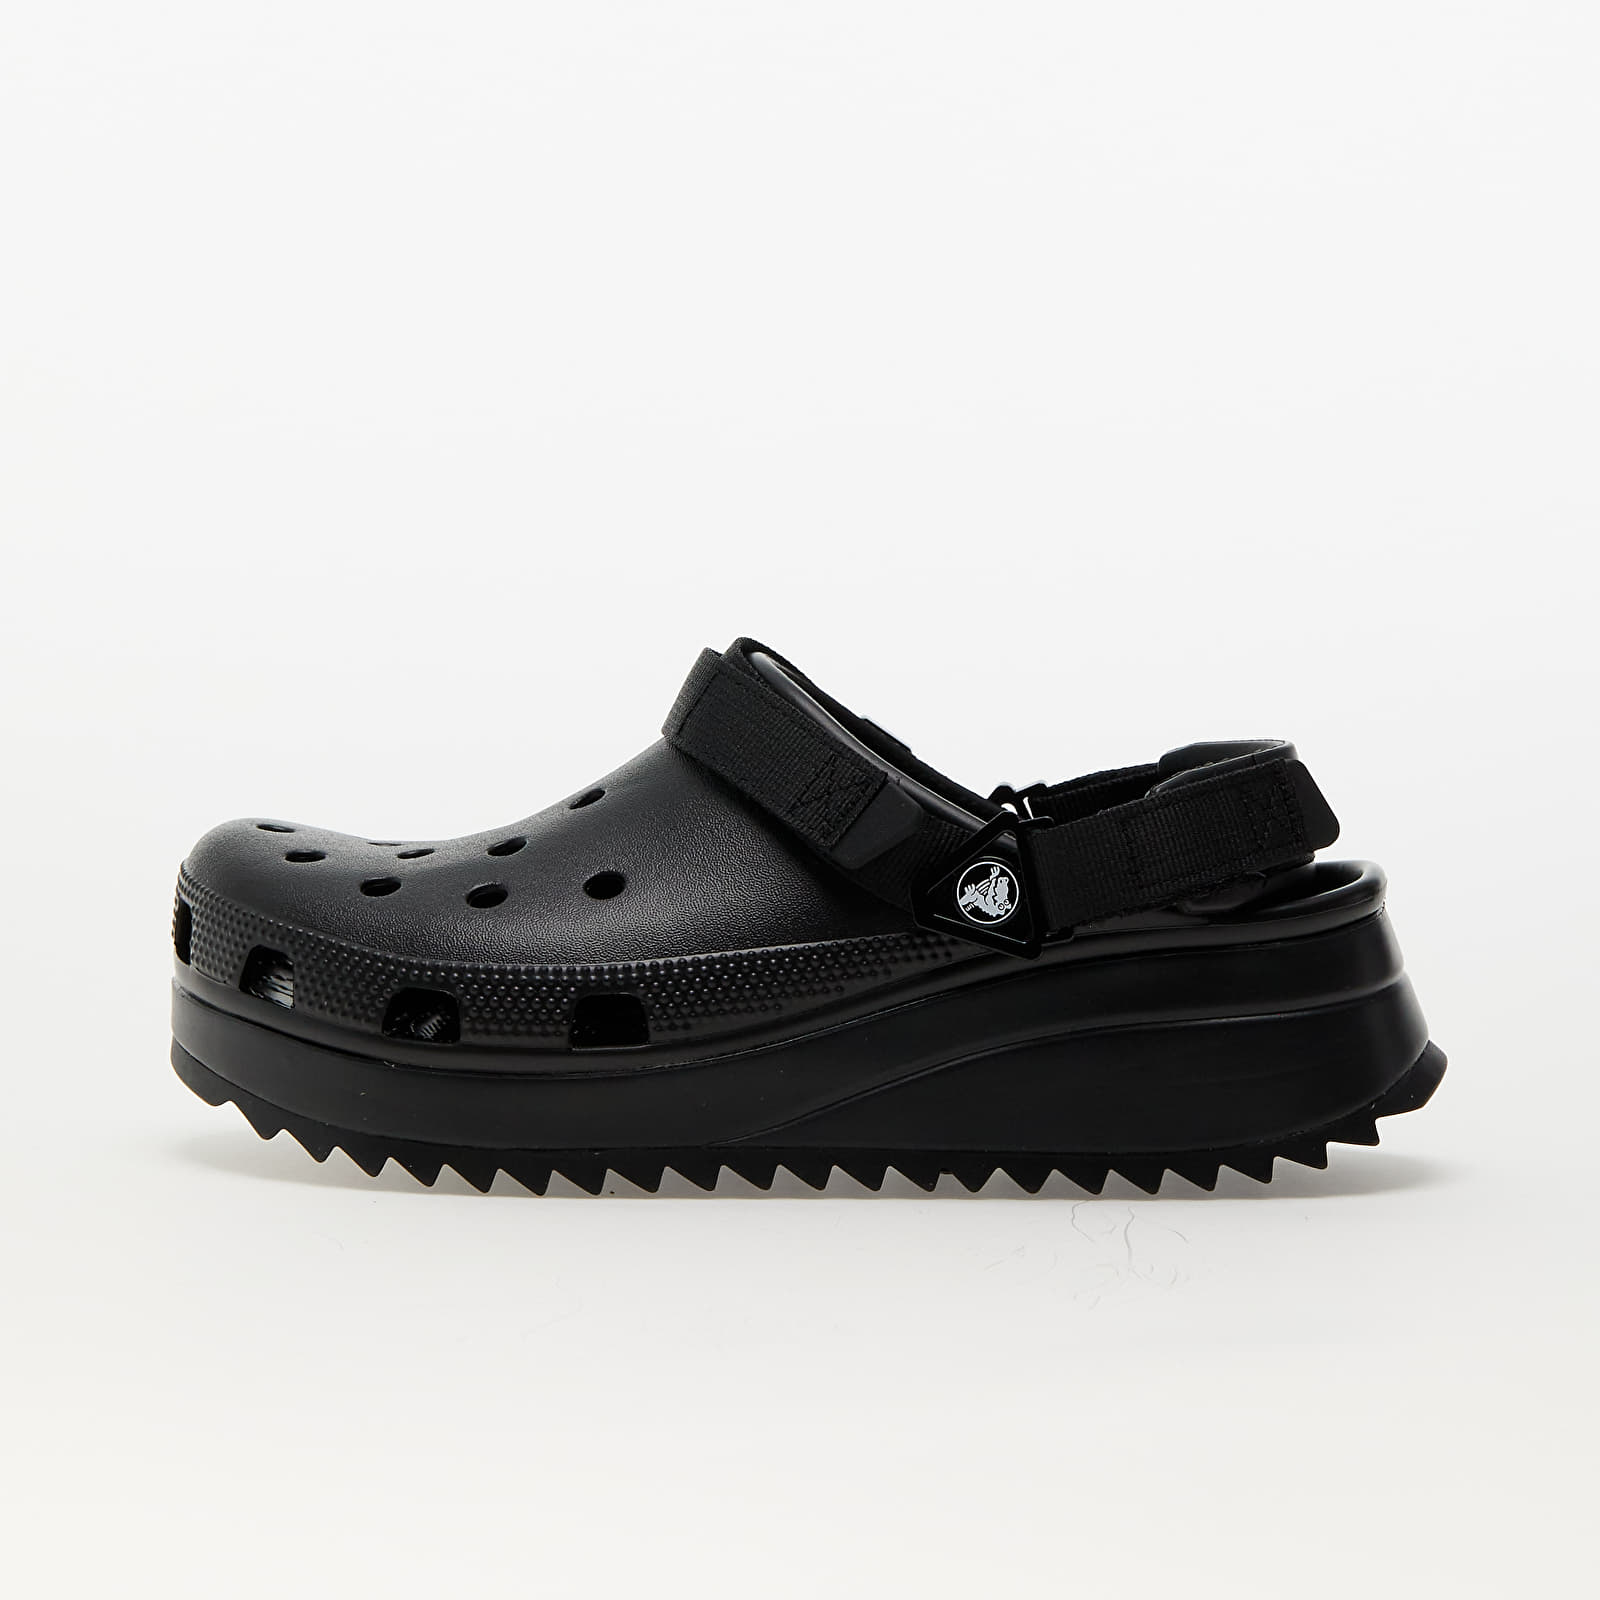 Men's shoes Crocs Classic Hiker Clog Black/ Black